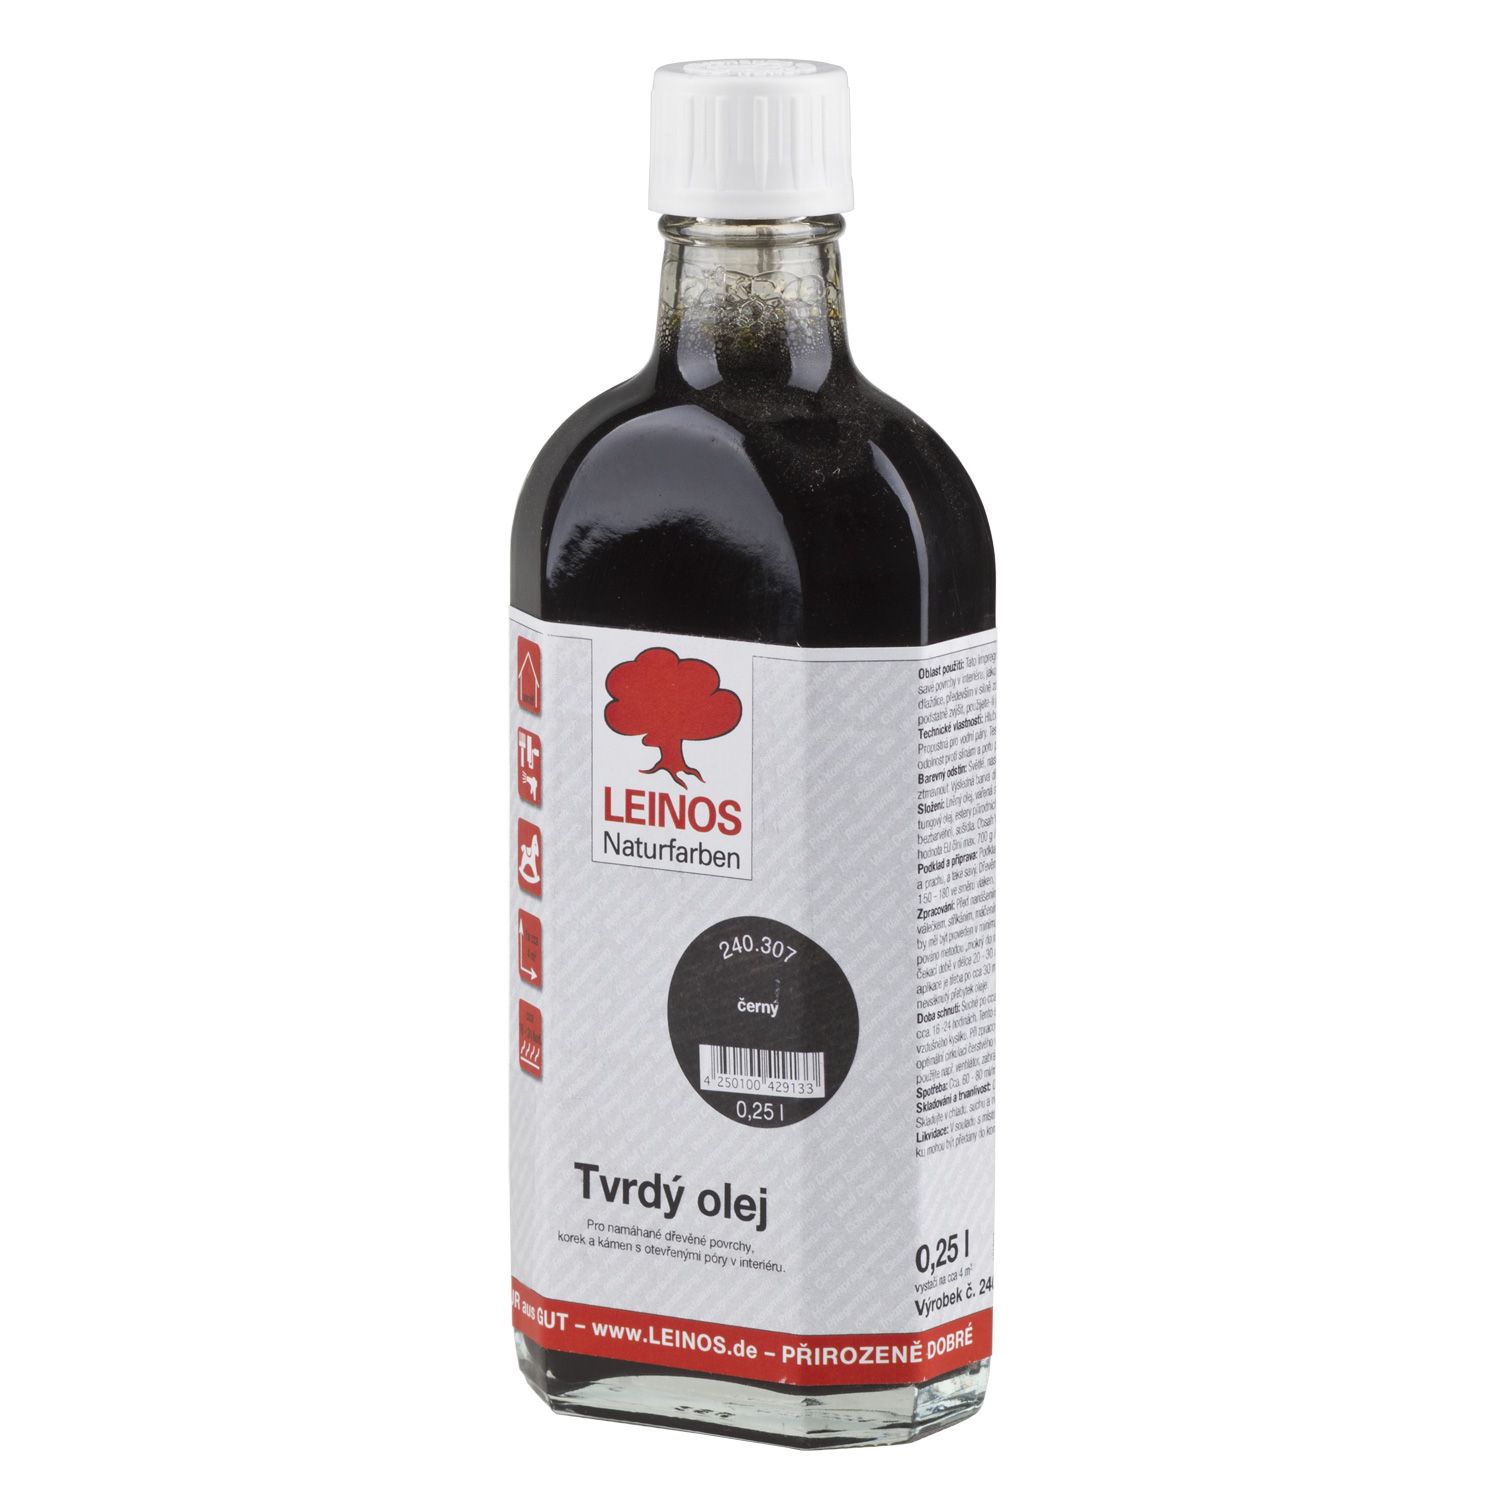 Leinos 240 Tvrdý olej - 307 černý (250ml)